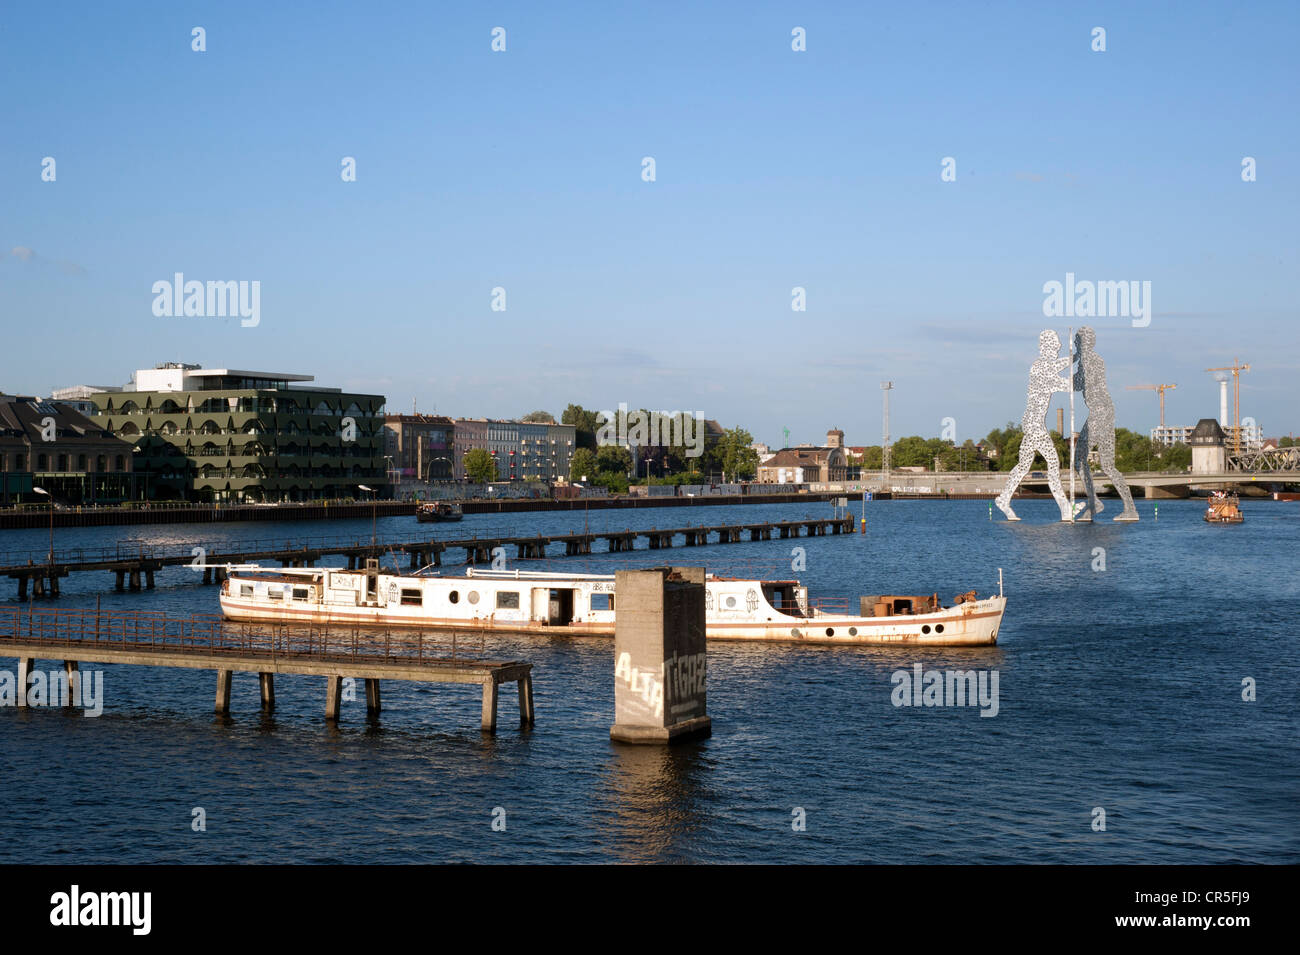 La sculpture Molecul homme par Jonathan Borofsky et un bateau dans la rivière Spree, Berlin Banque D'Images